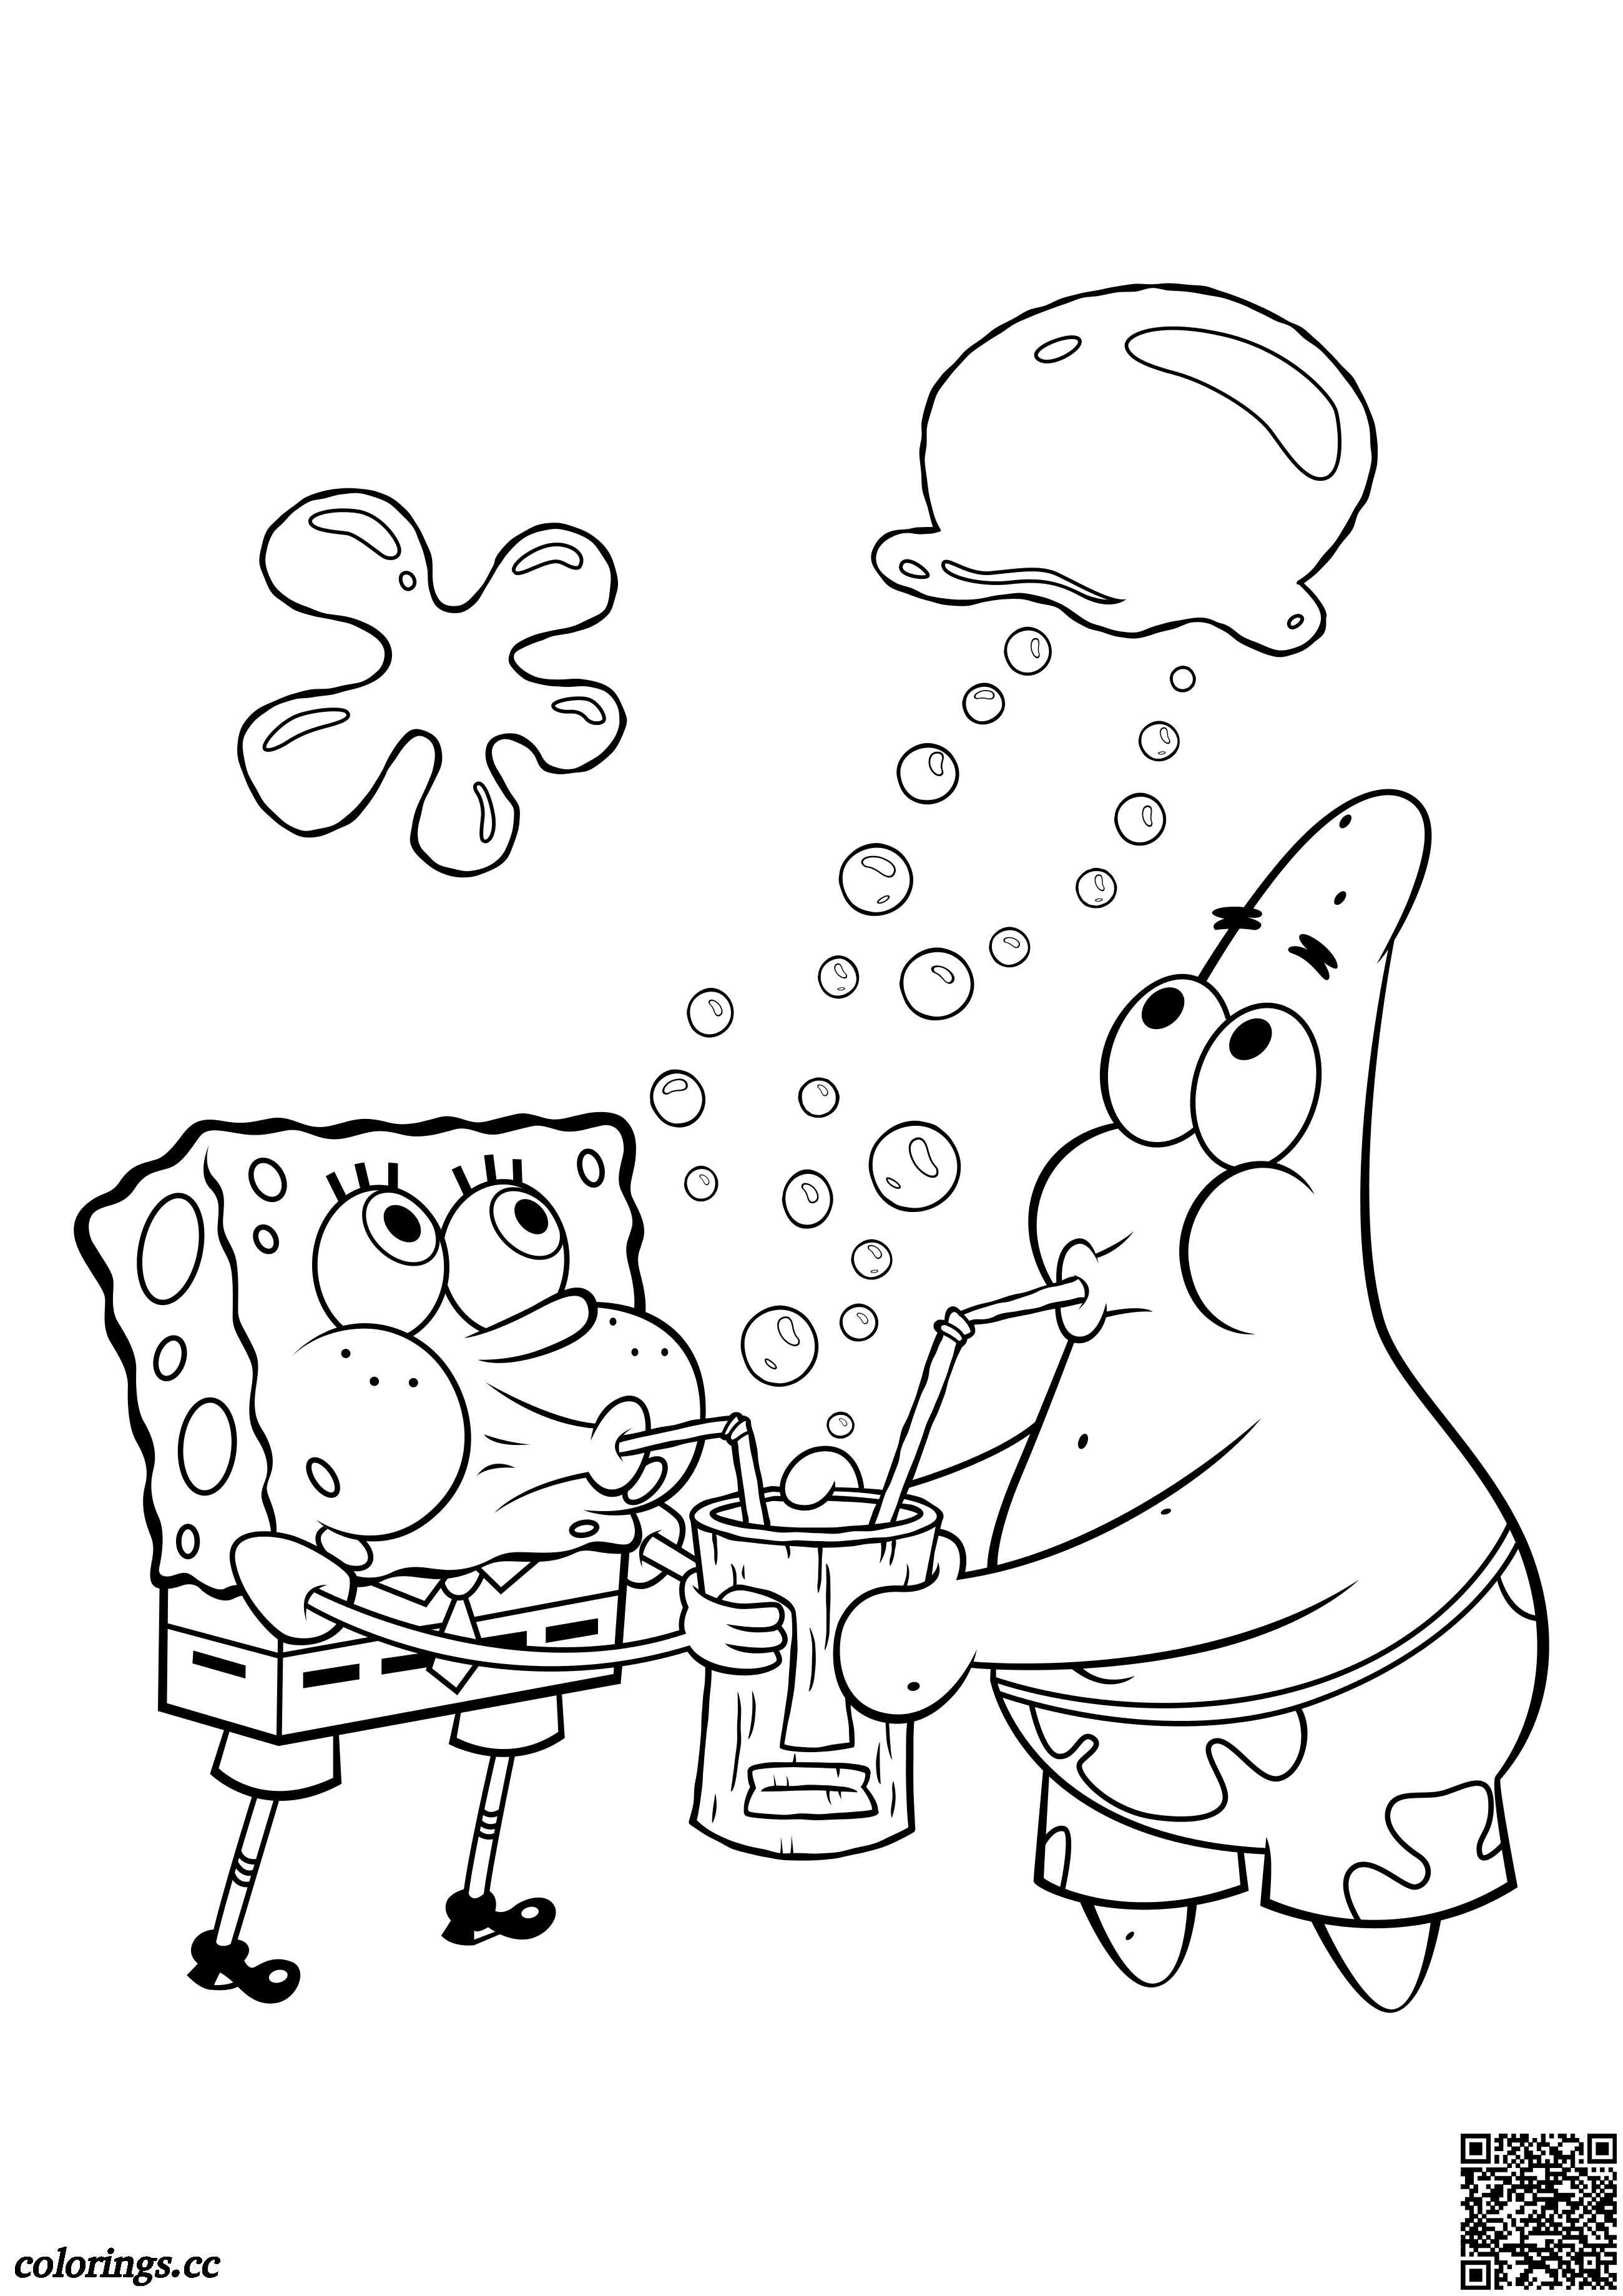 SpongeBob and Patrick Star blow bubbles coloring pages, sponge Bob ...